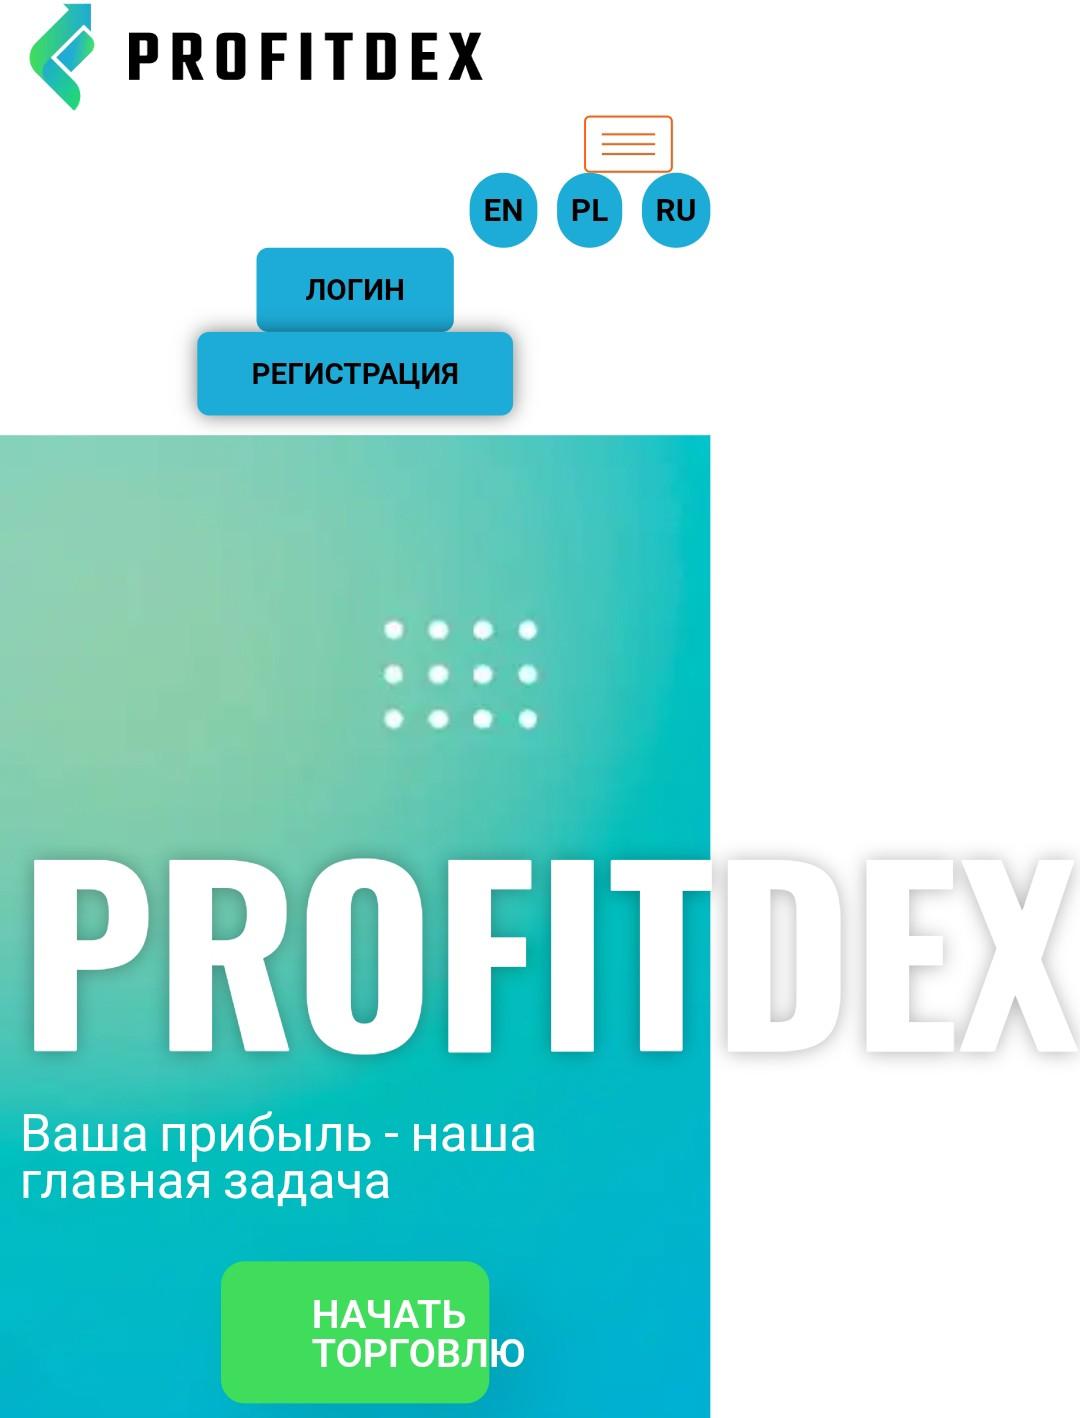 Profitdex сайт